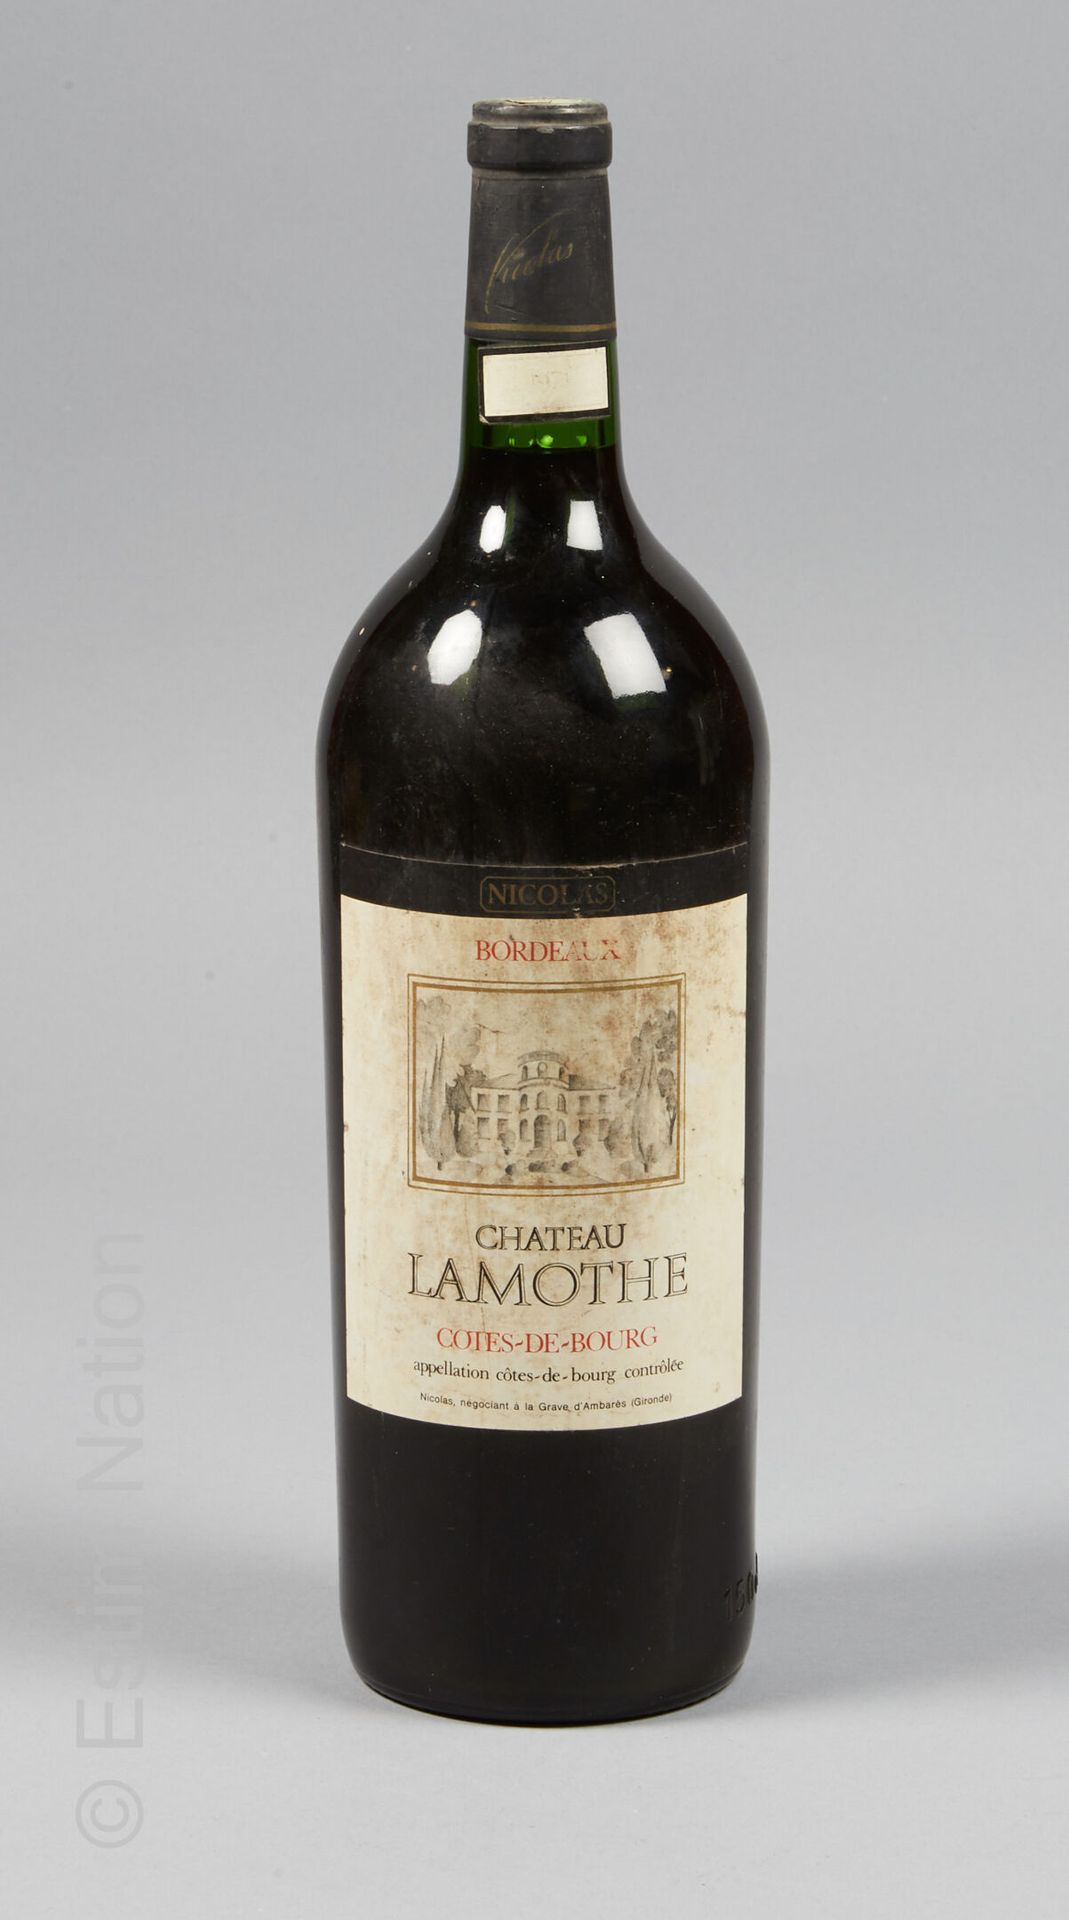 MAGNUM LAMOTHE Magnum Château Lamothe, 1971

Appellation Côtes-de-Bourg contrôlé&hellip;